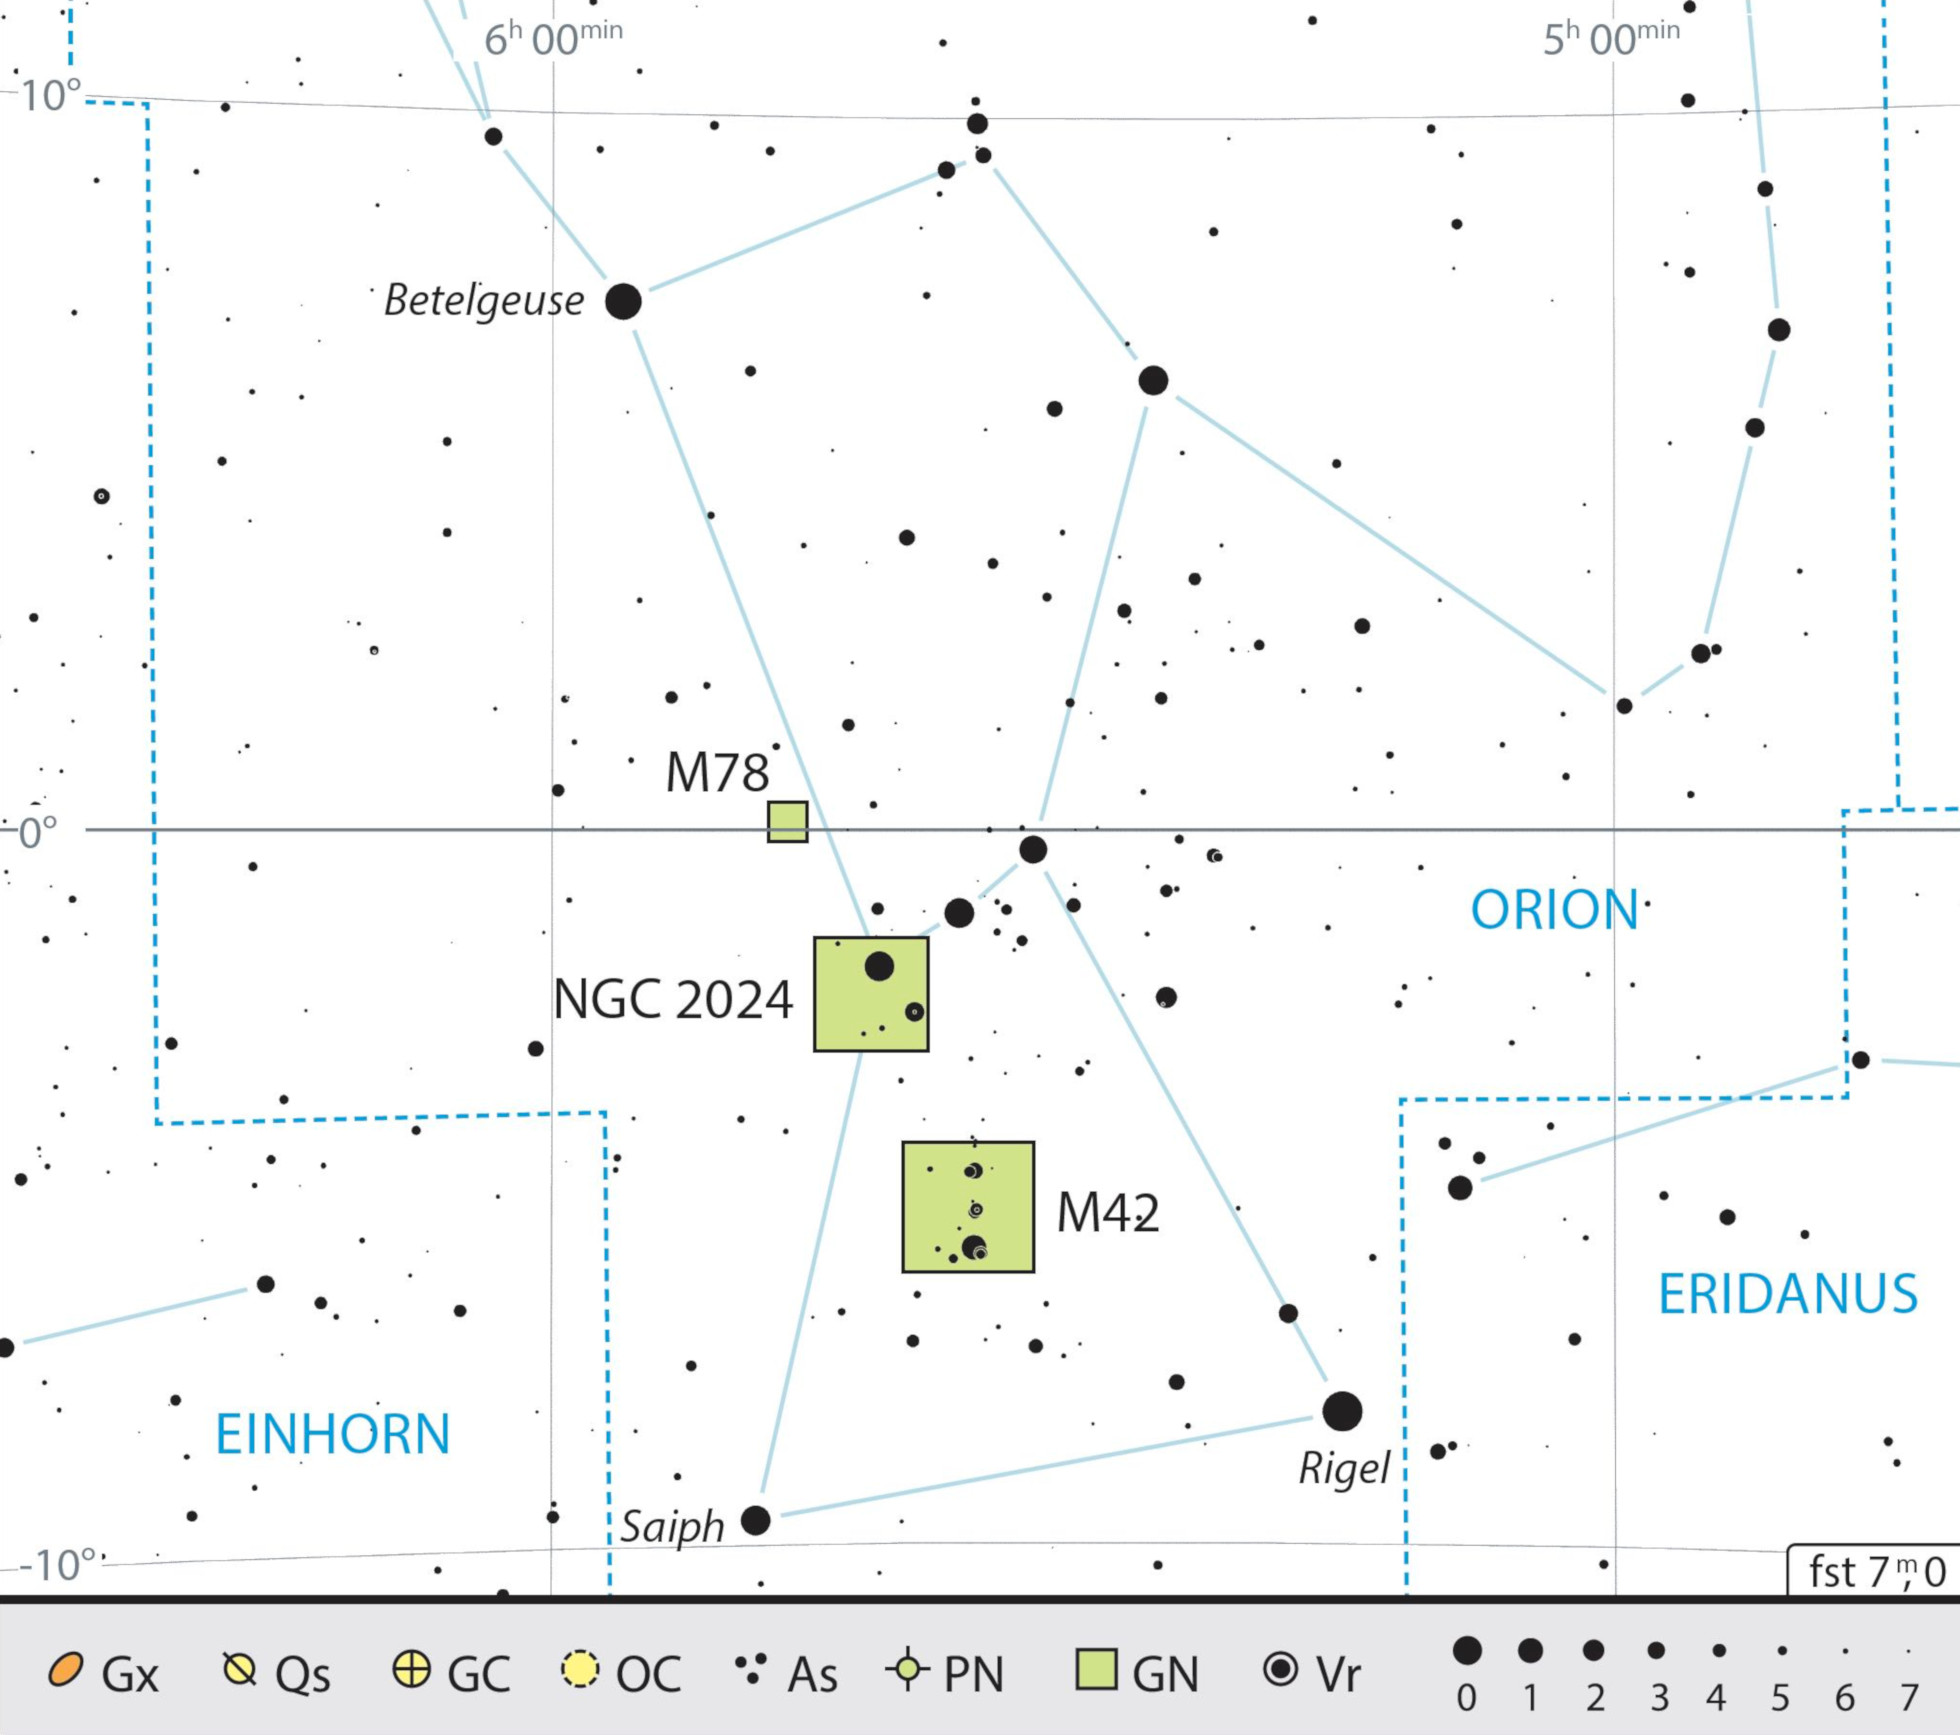 Mappa celeste per la costellazione di Orione, con gli oggetti consigliati. J. Scholten